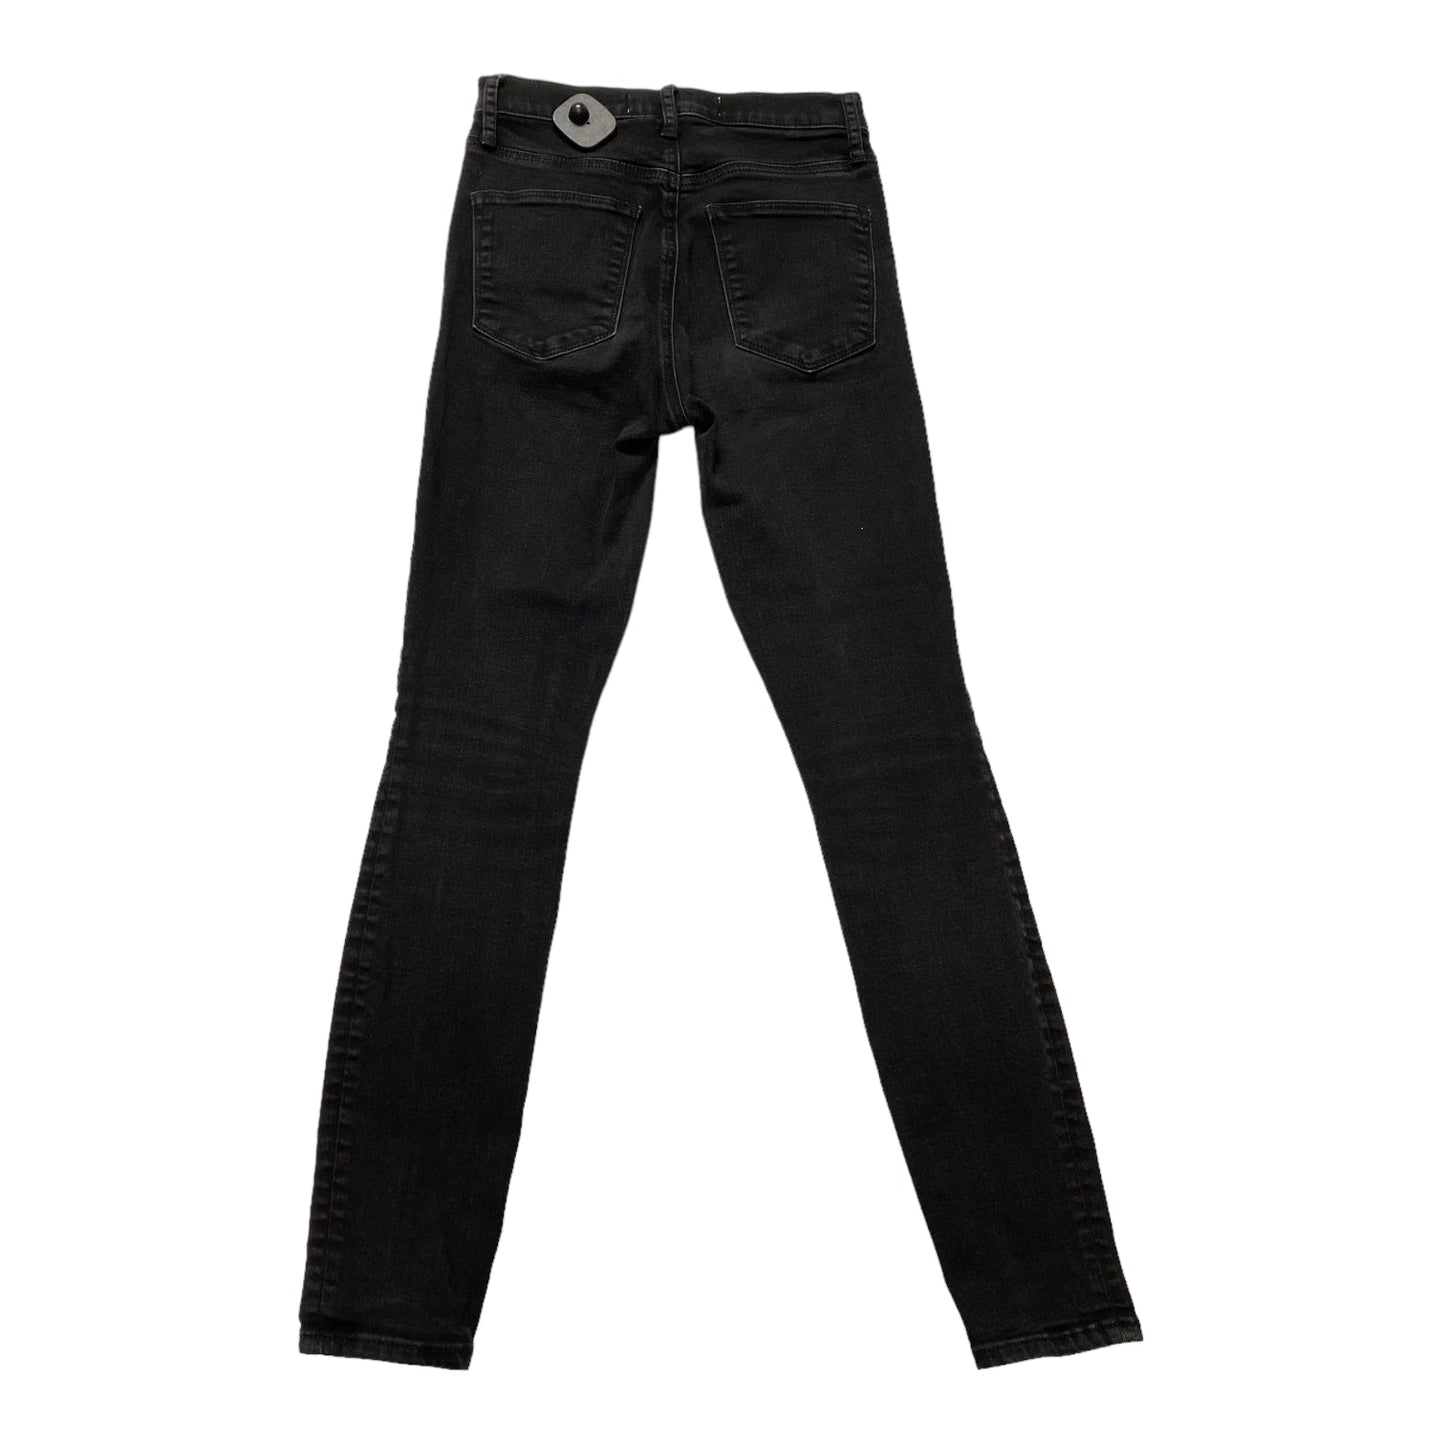 Black Denim Jeans Skinny Gap, Size 0